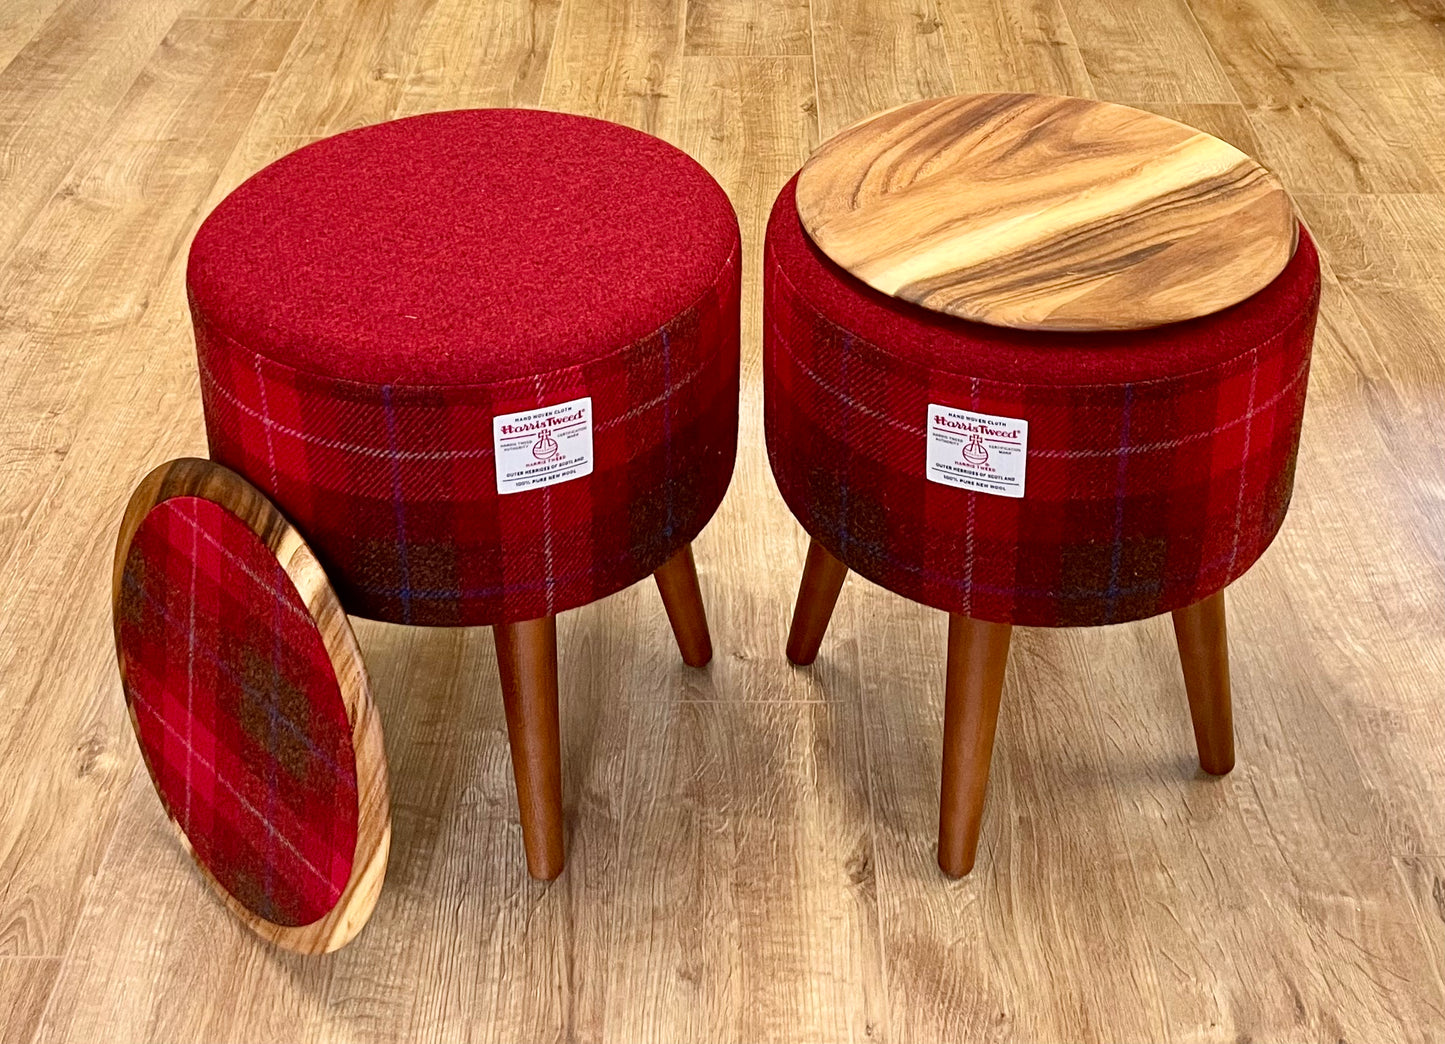 Deep Red Harris Tweed Footstool Table